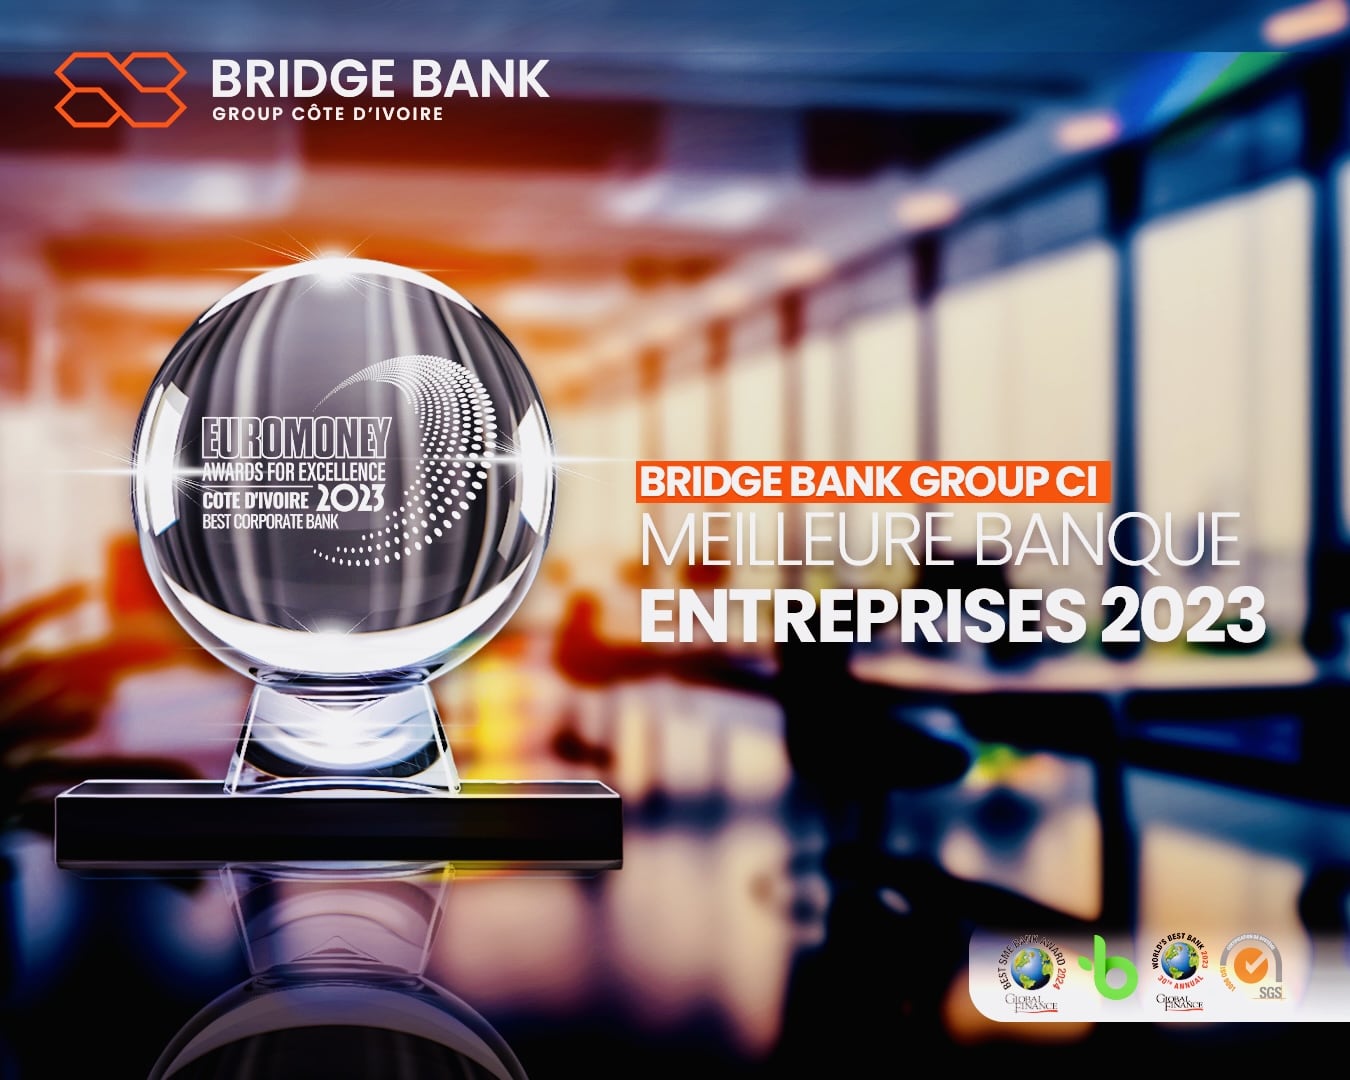 Bridge Bank Group Côte d'Ivoire, Meilleure Banque Entreprises 2023